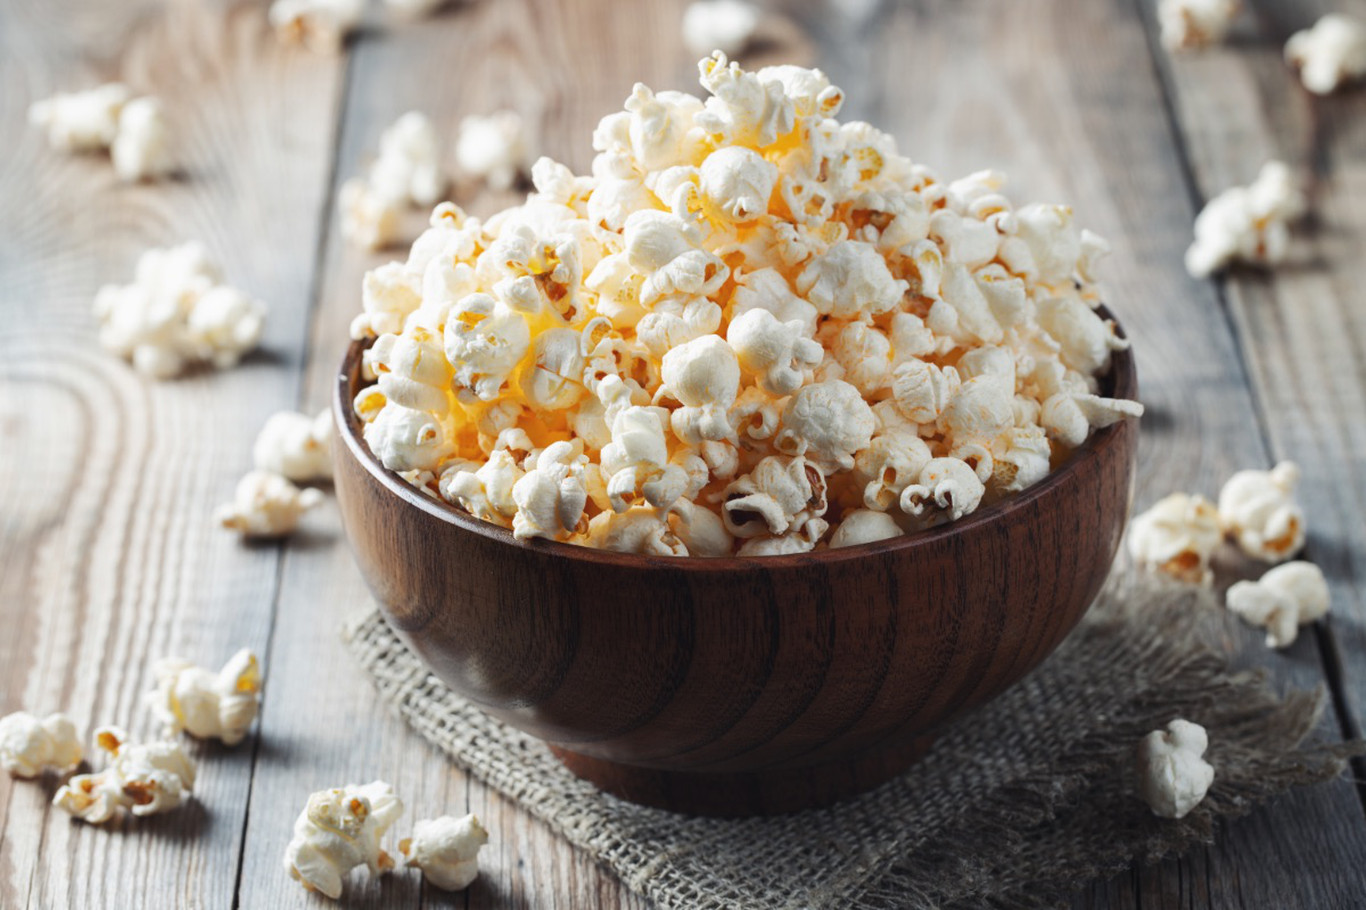 Custom Popcorn Seasoning Kit